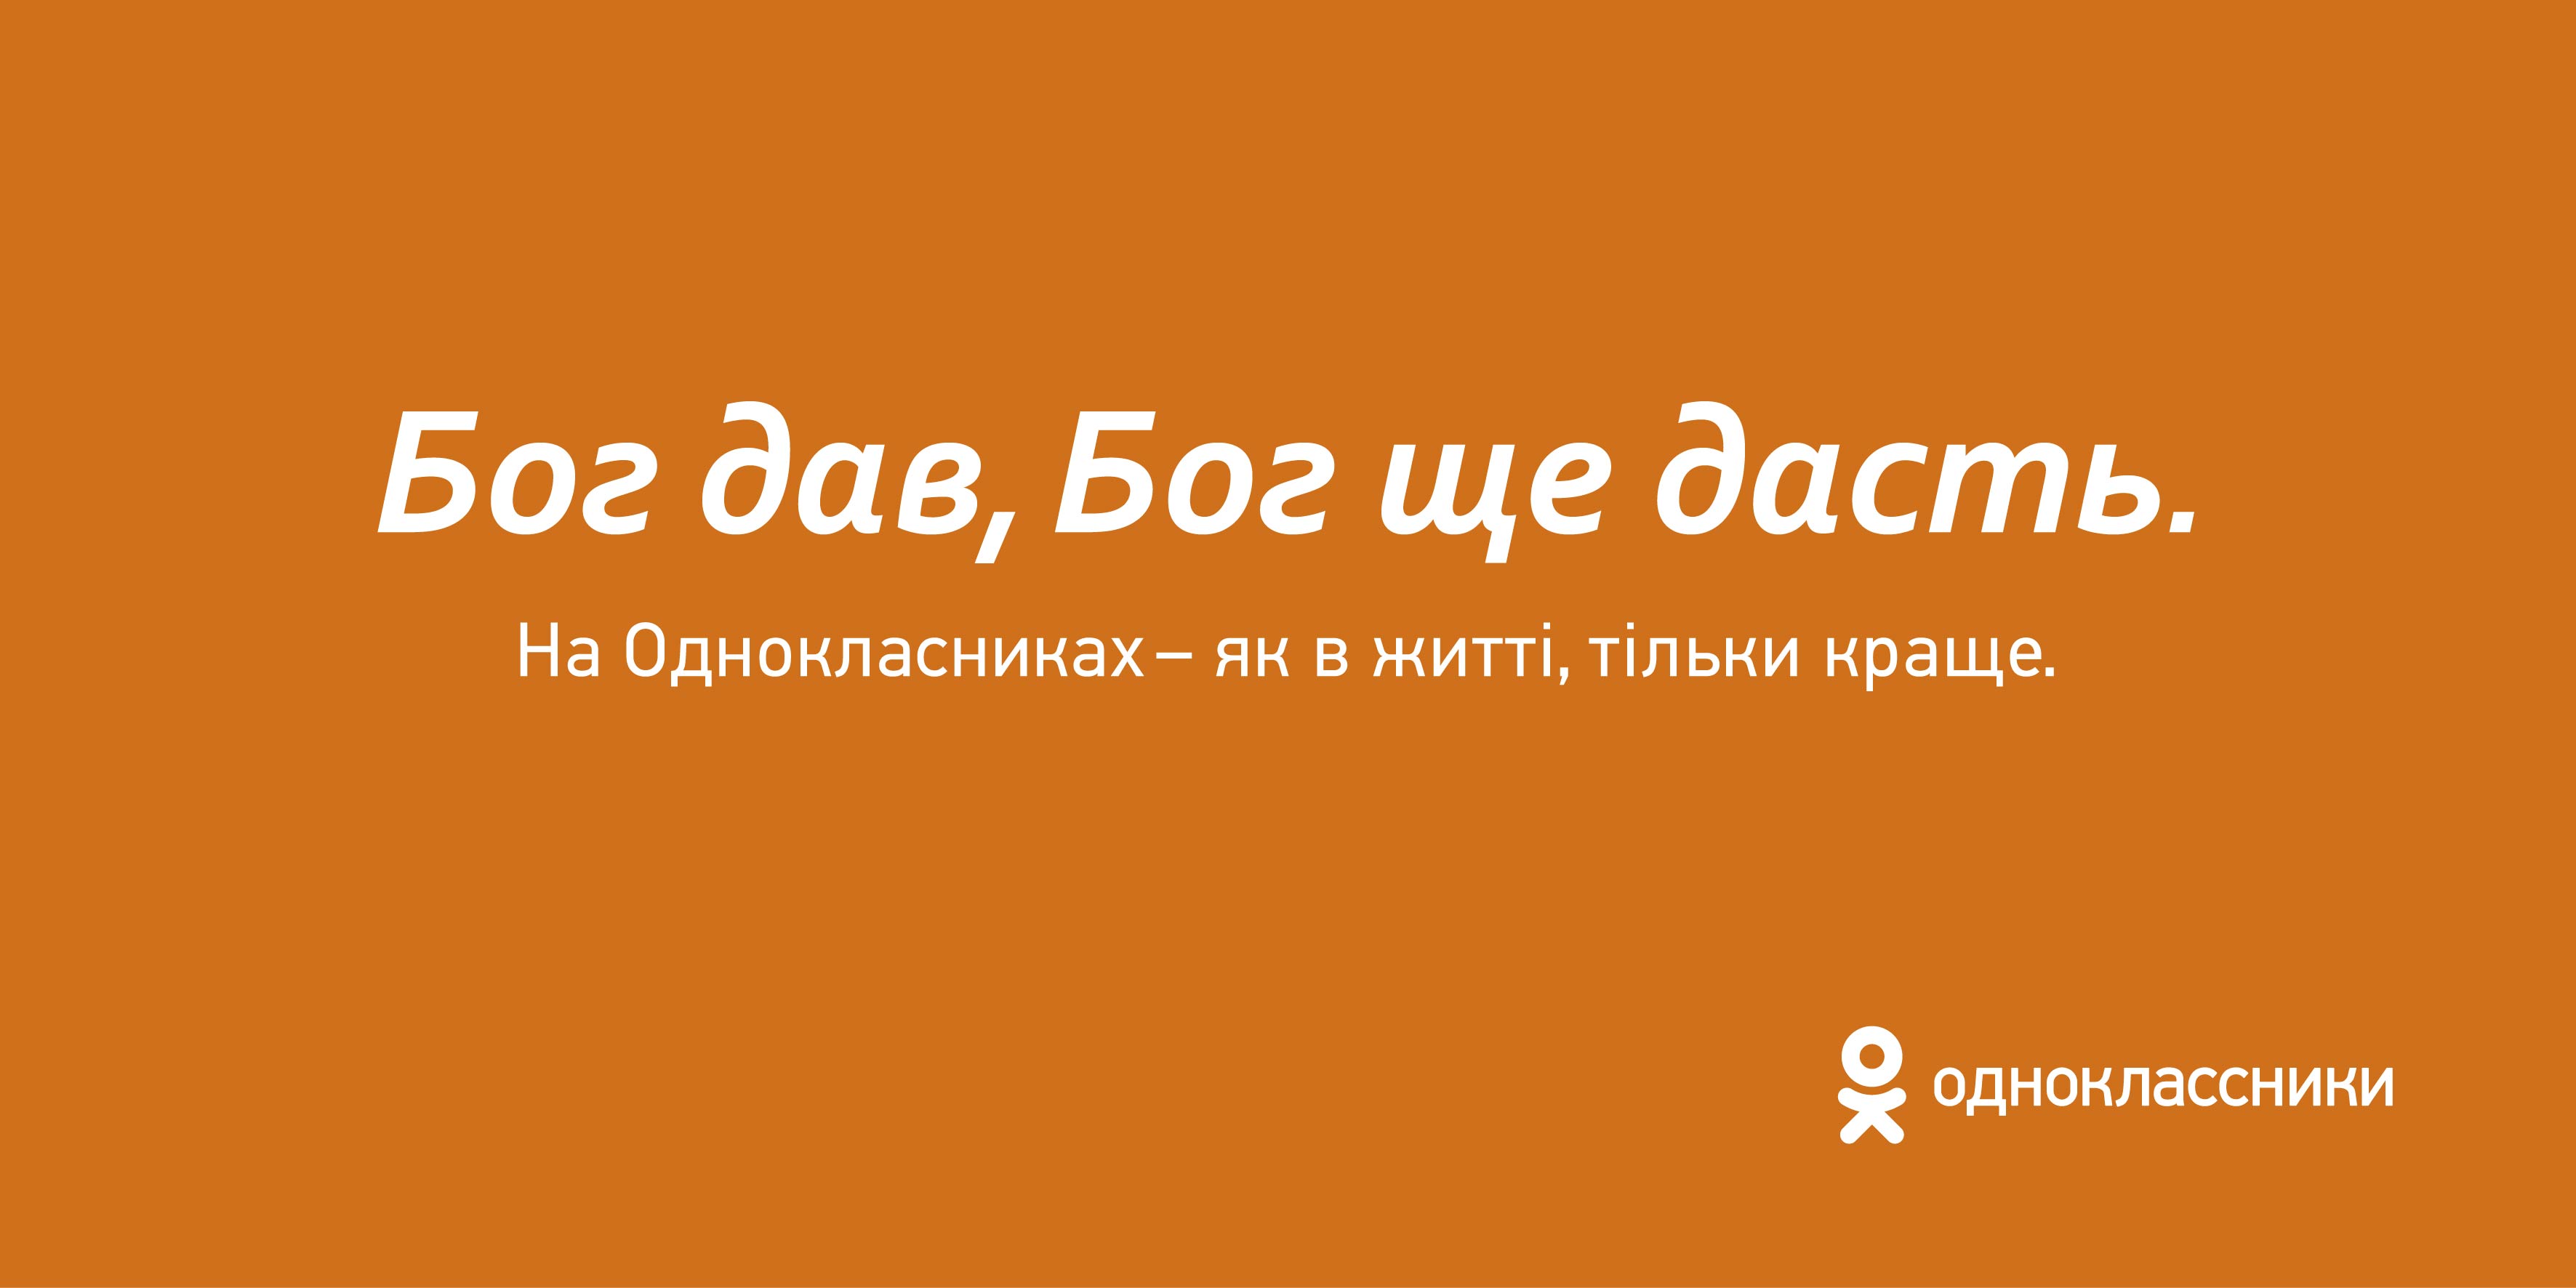 Социальная сеть Одноклассники запустила рекламную кампанию 